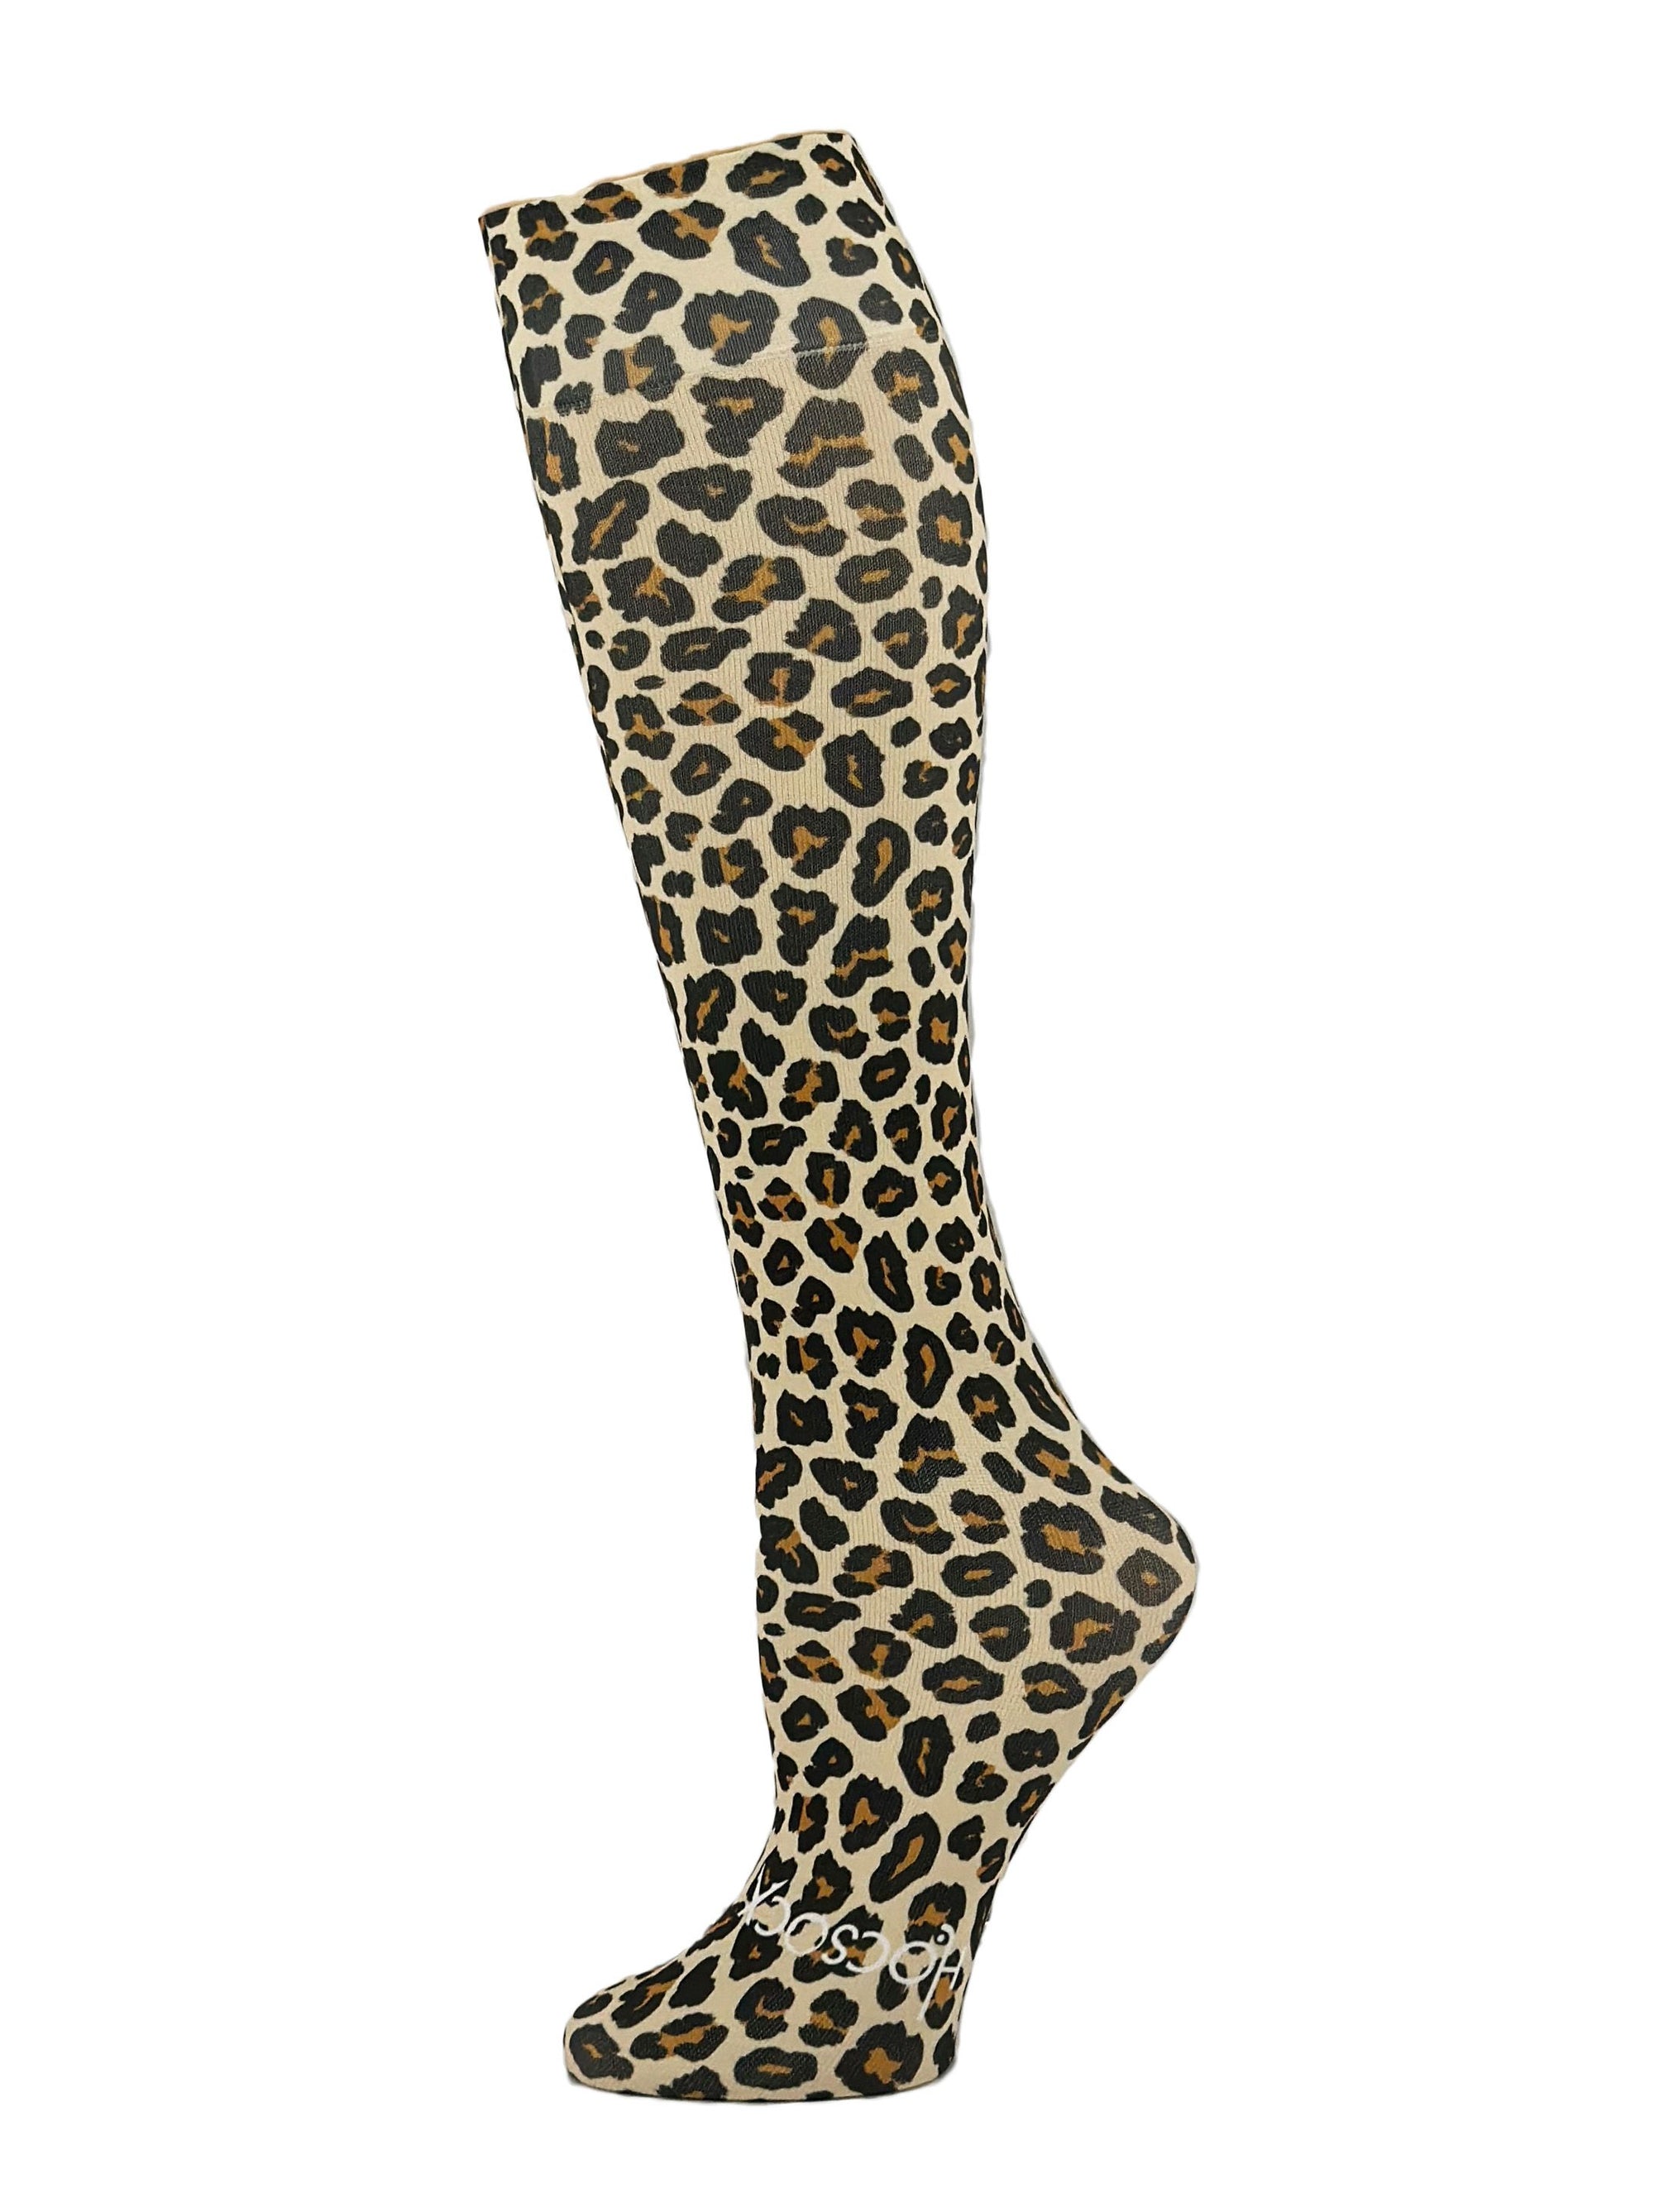 Leopard Skin Socks